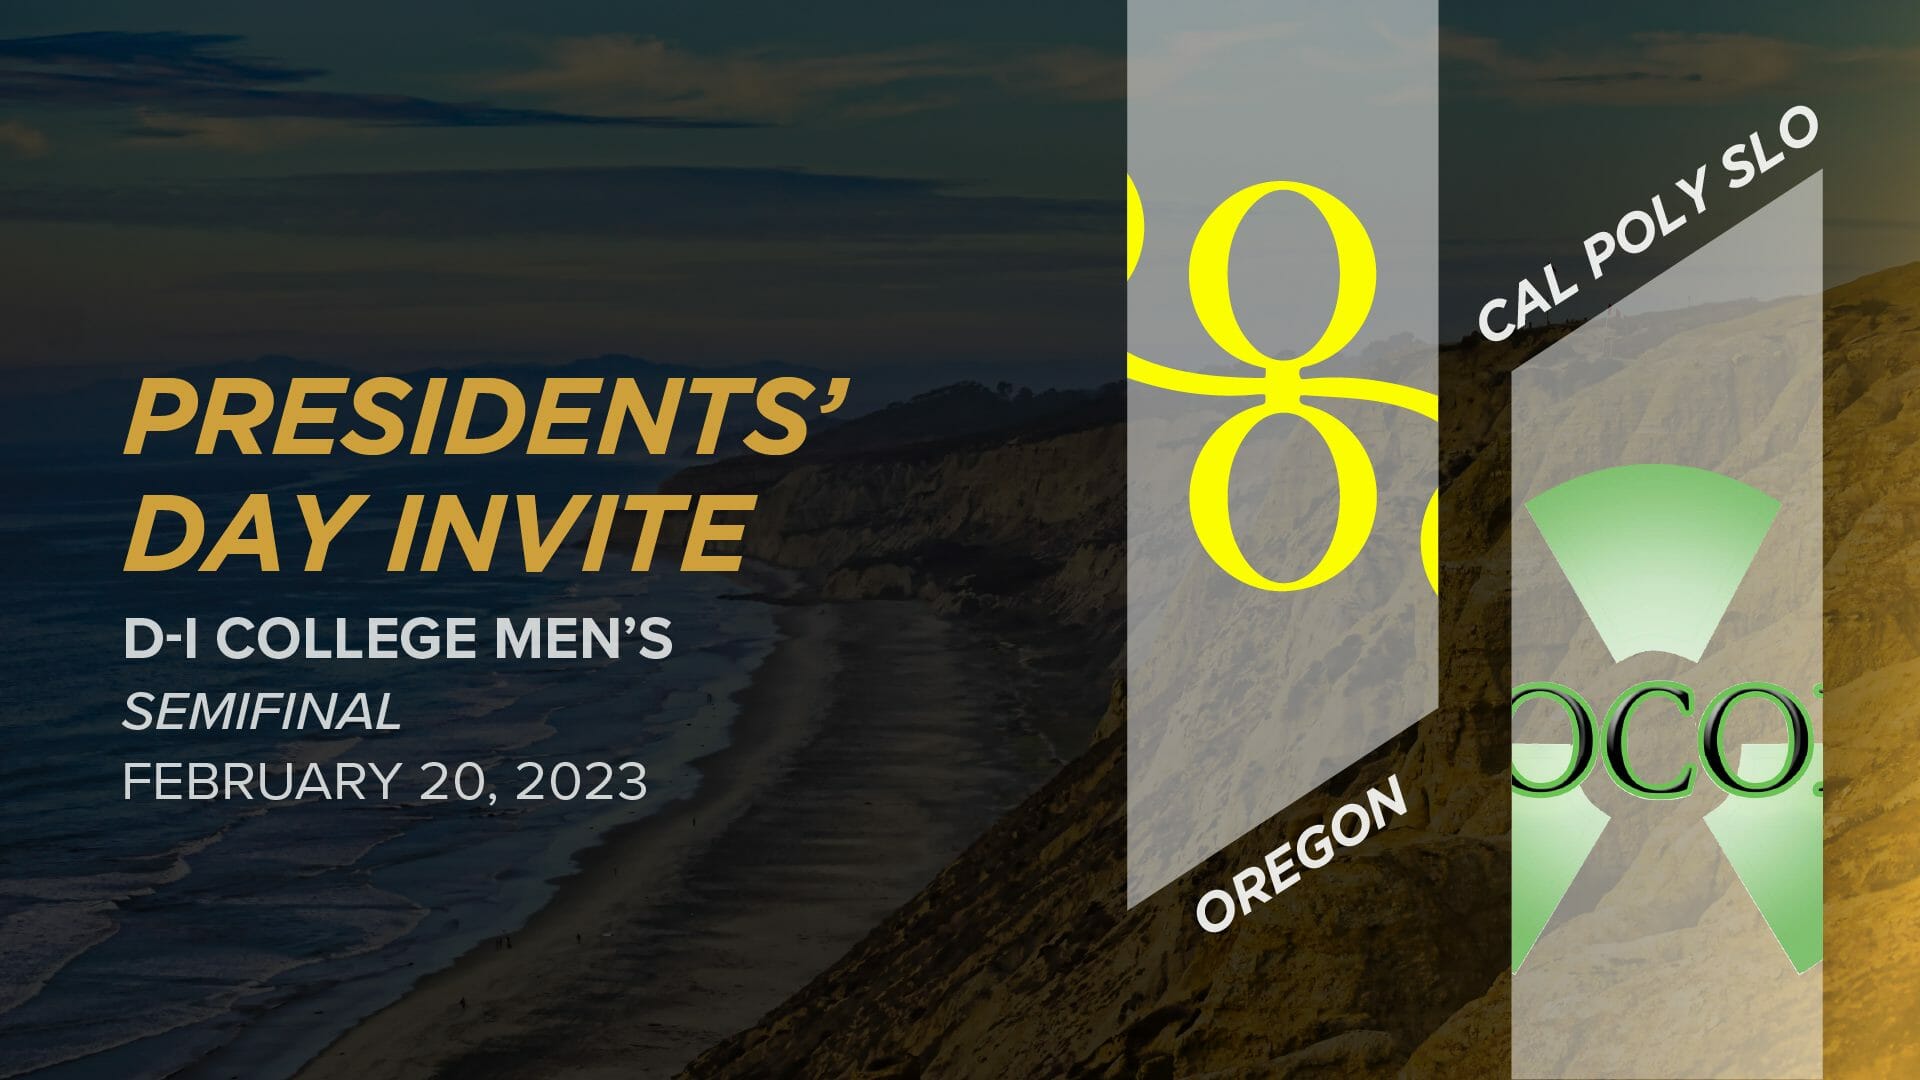 Oregon vs. Cal Poly SLO (Men's Semifinal) 2023 Presidents’ Day Invite